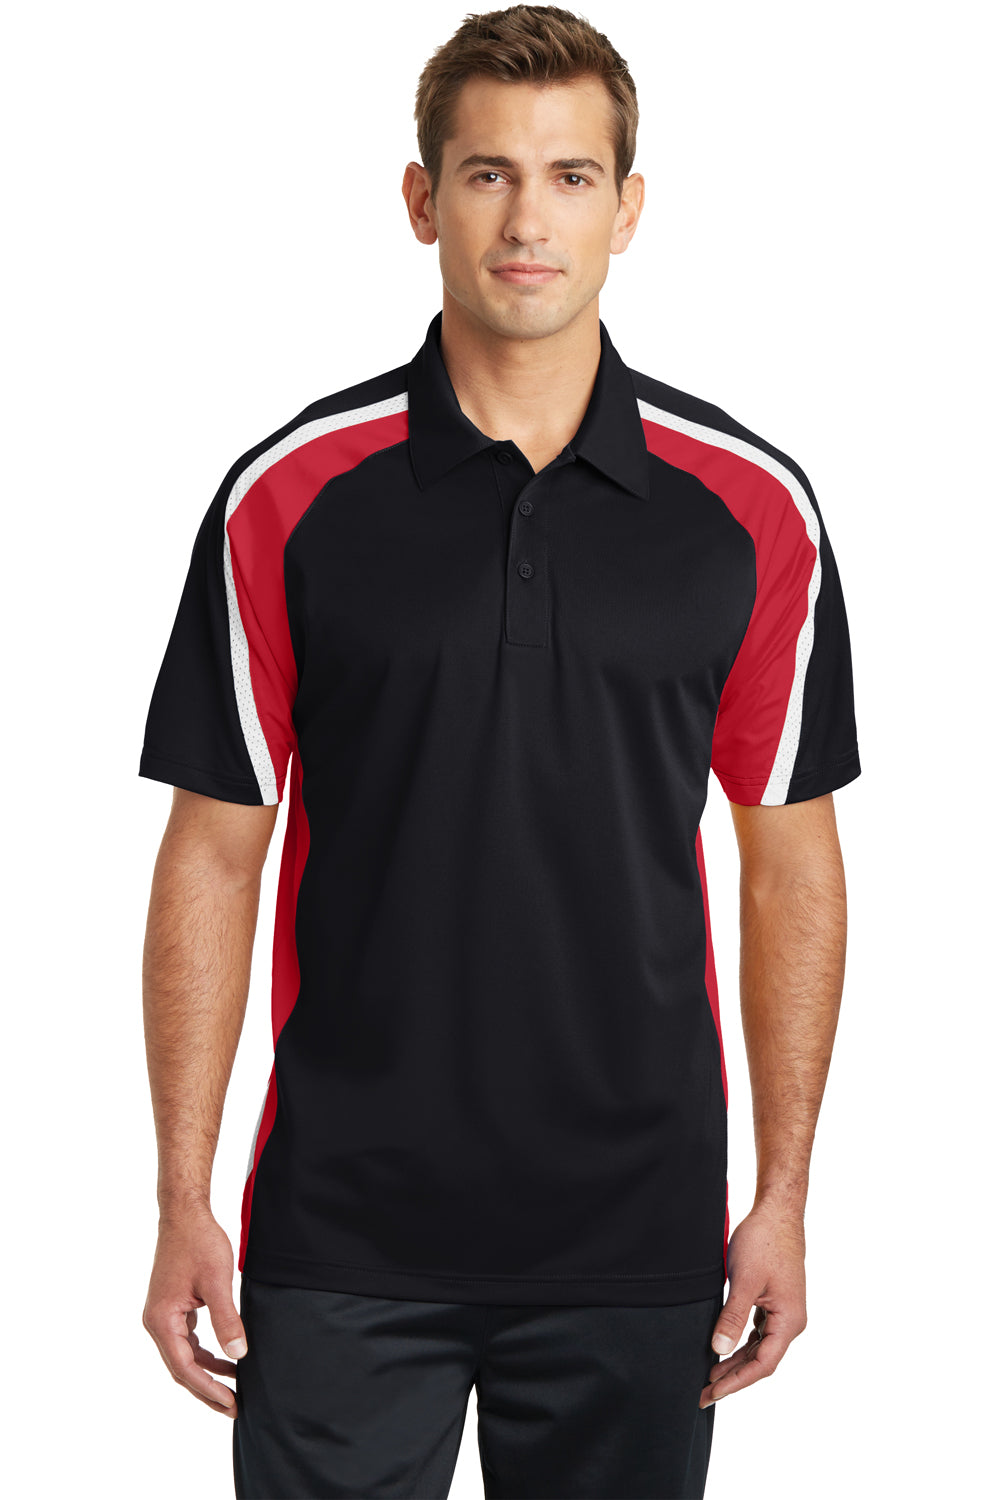 Sport-Tek ST654 Mens Sport-Wick Moisture Wicking Short Sleeve Polo Shirt Black/Red/White Front